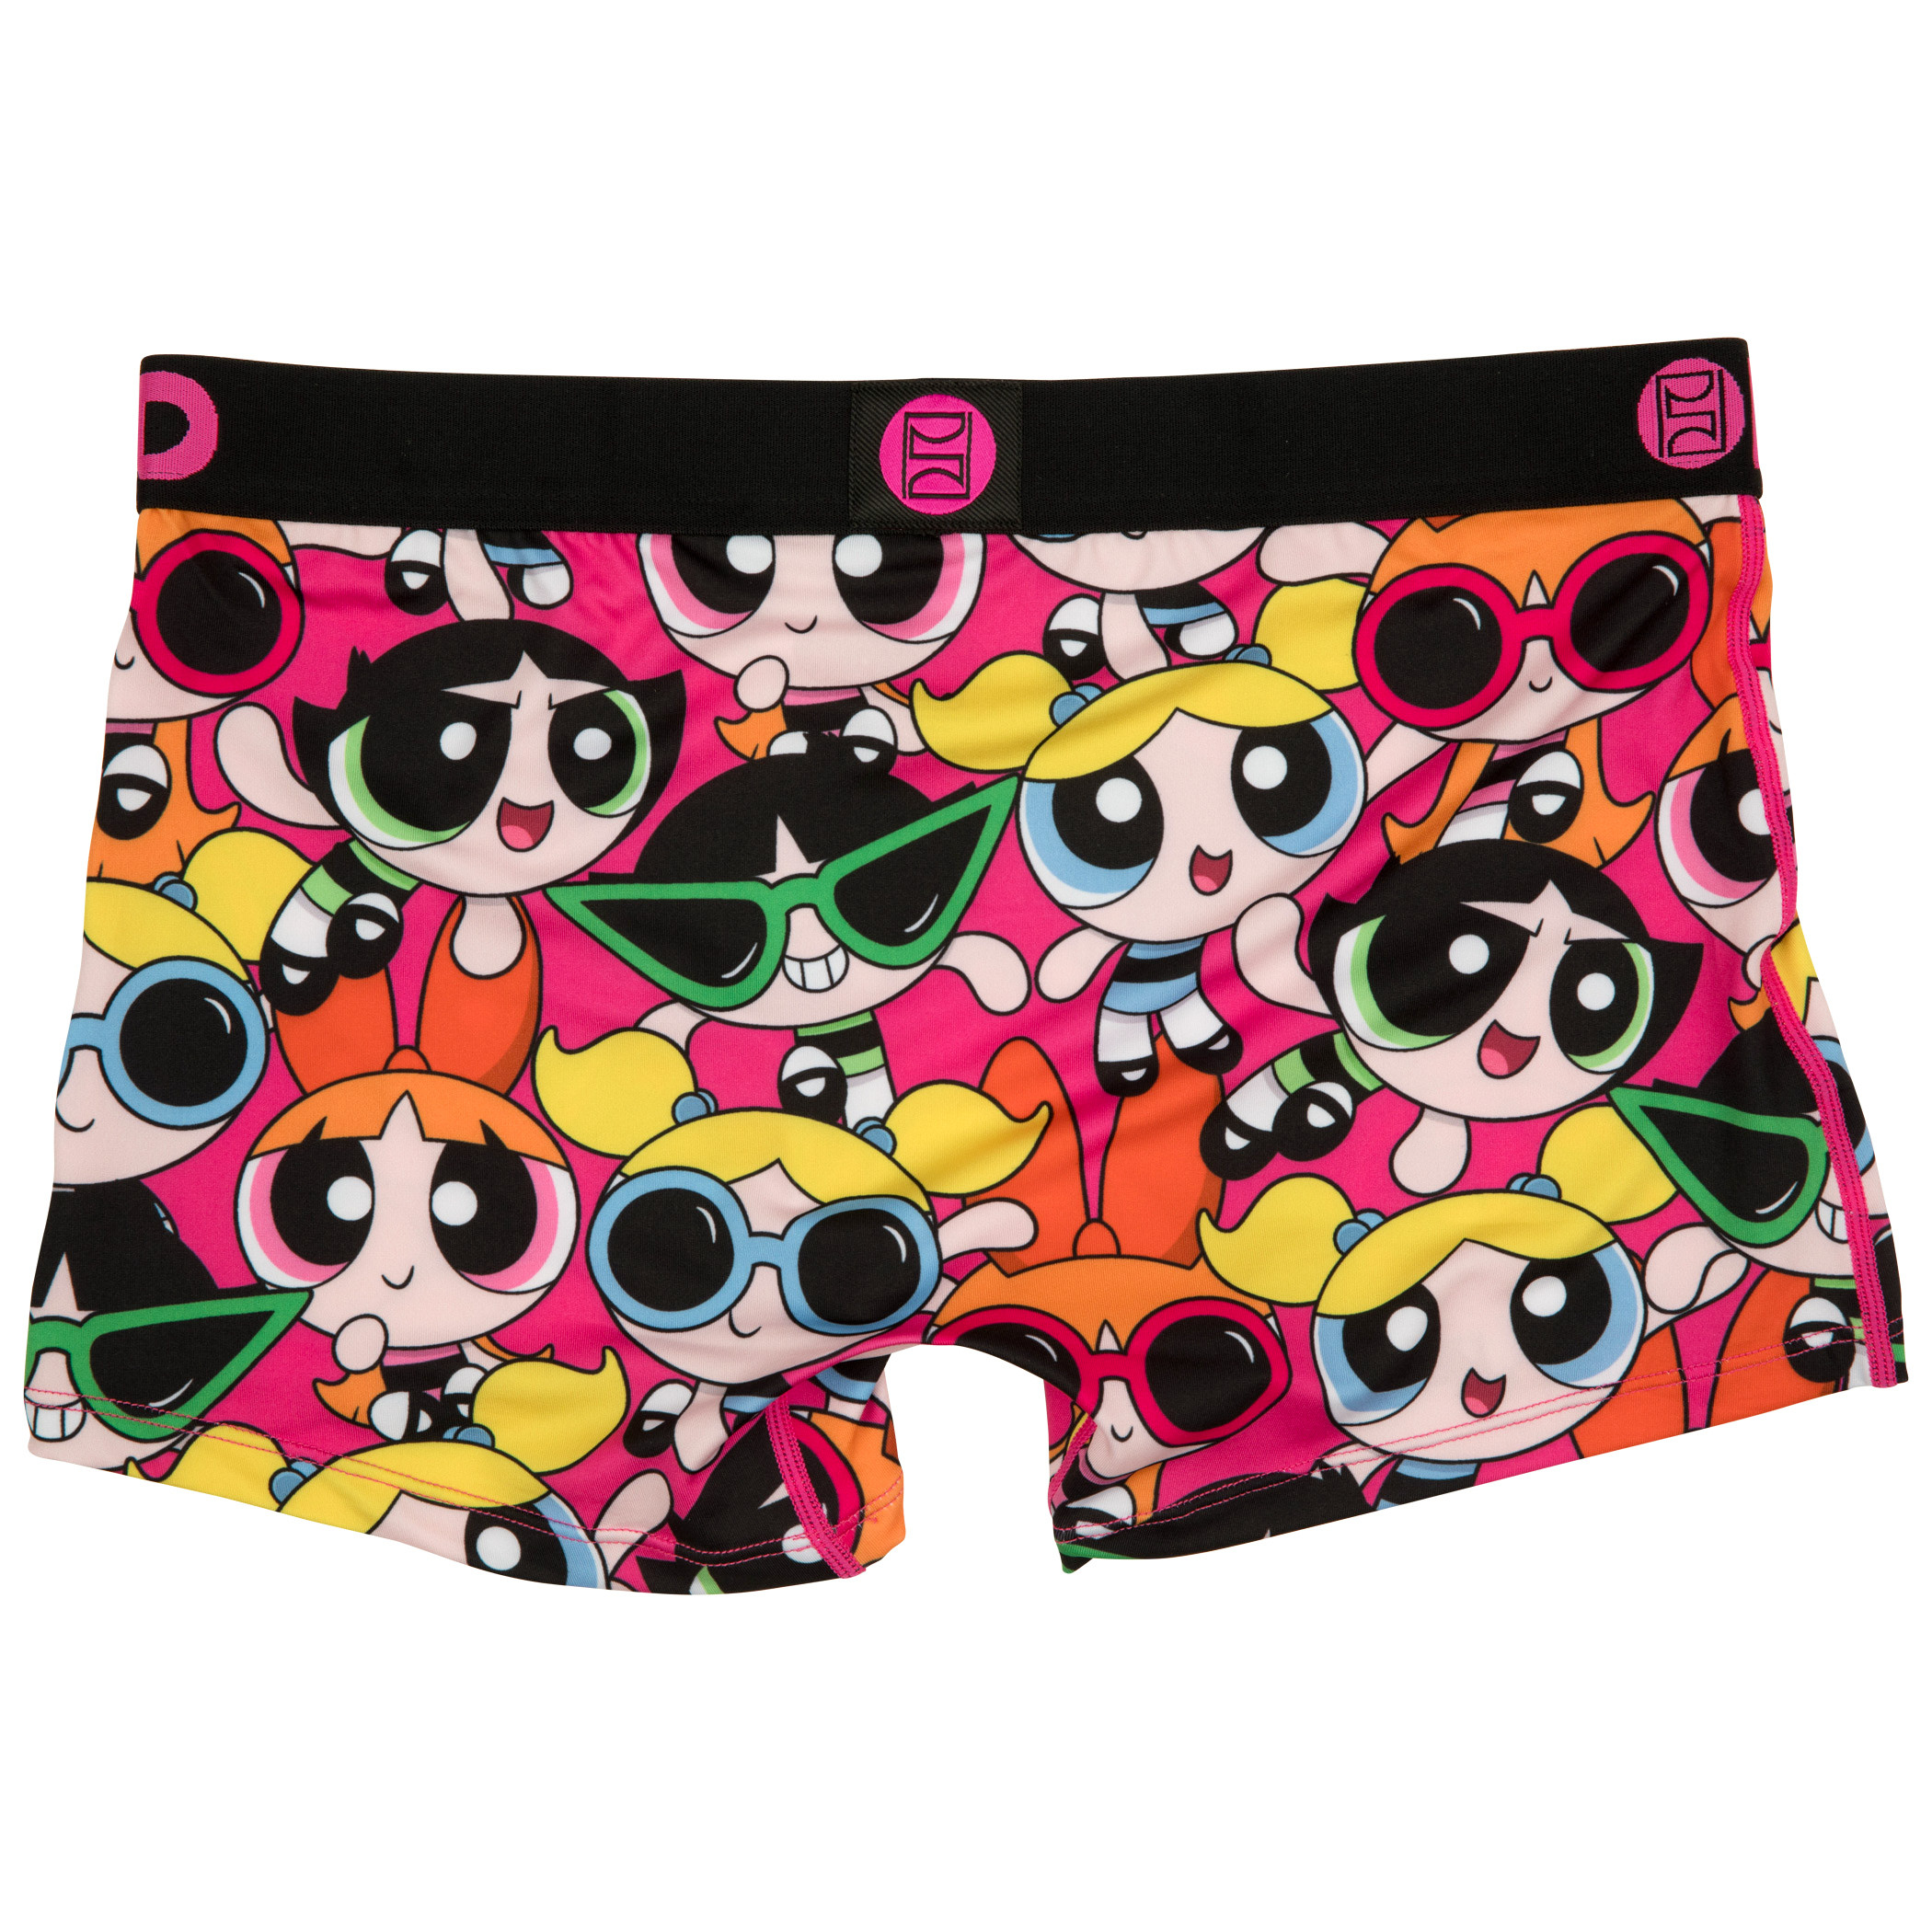 Powerpuff Girls Summer Shades PSD Boy Shorts Underwear